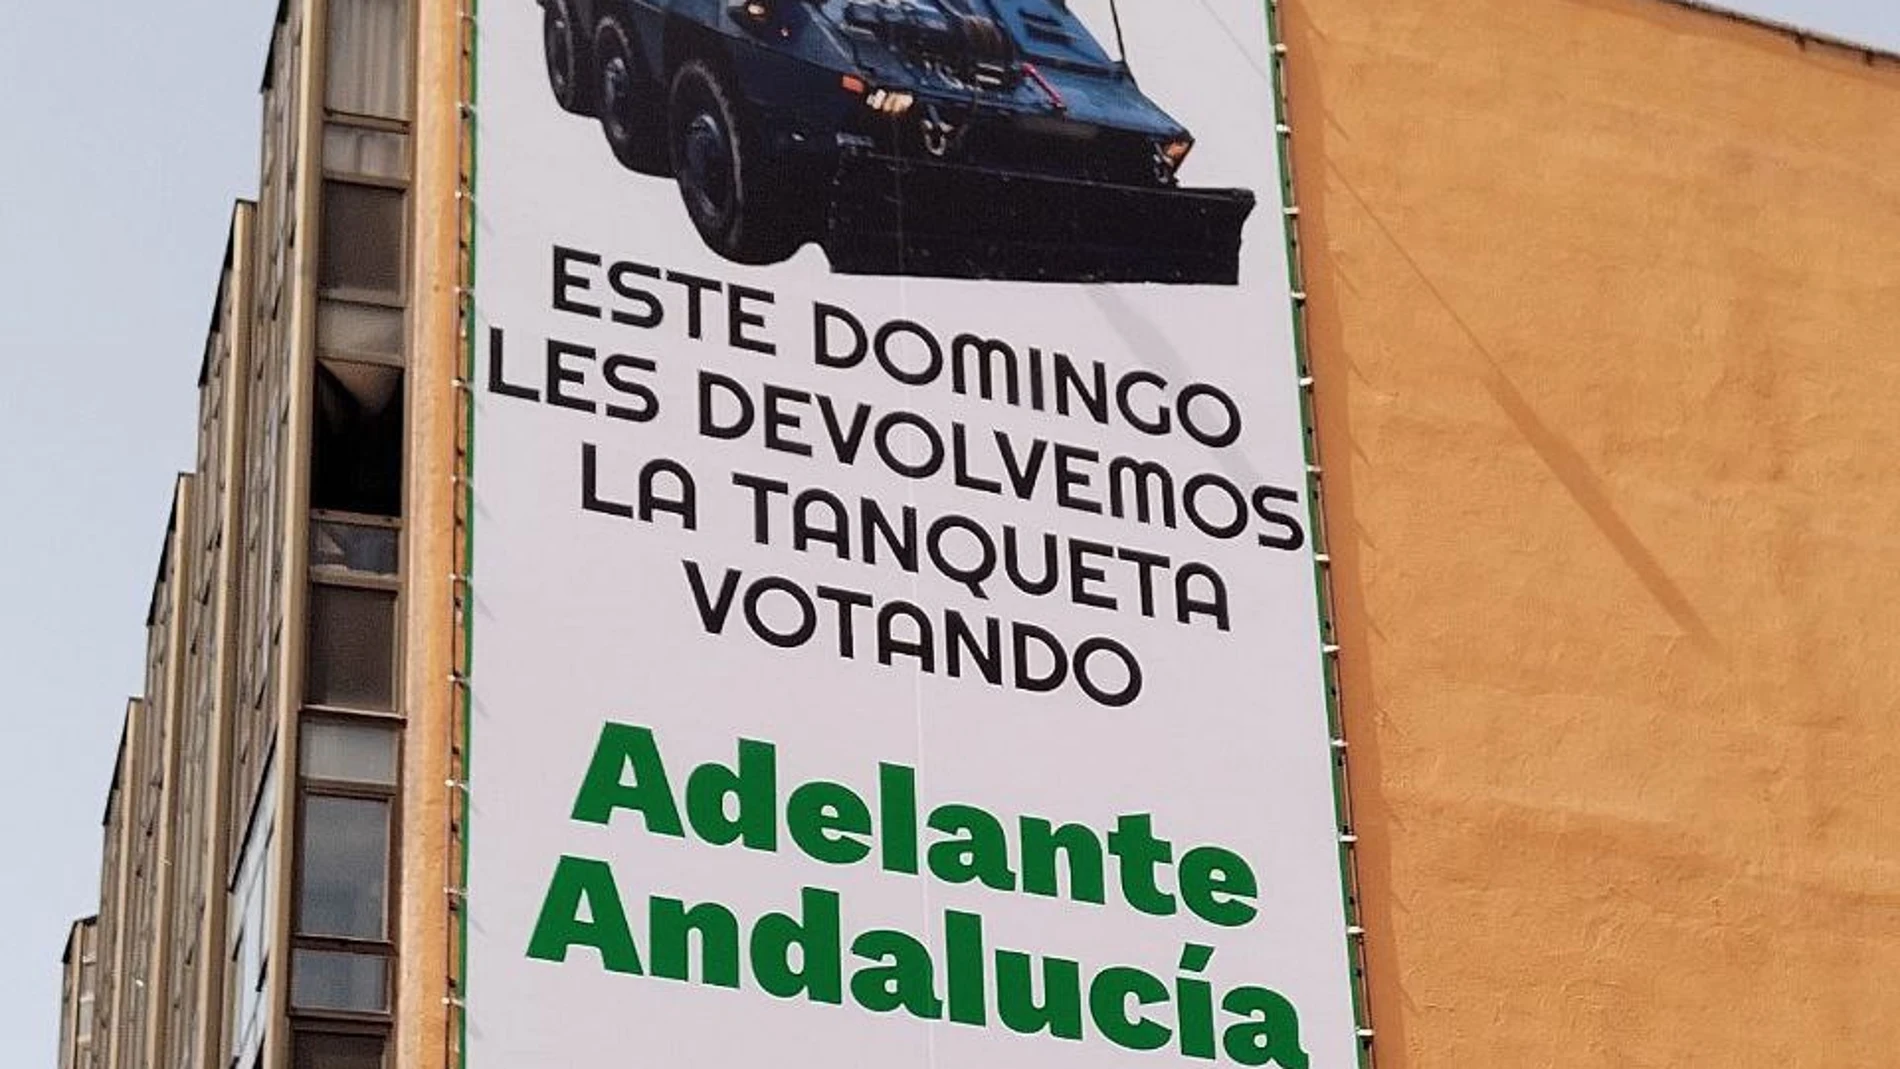 MADRID, 19/07/2023.-Adelante Andalucía ha colgado una lona en la calle Azucenas, 3 en Madrid en la que dice que “este domingo les devolvemos la tanqueta votando Adelante Andalucía”, con una imagen del carro blindado que el Ministerio del Interior envió en noviembre de 2021 a la Bahía de Cádiz para hacer frente a los disturbios durante la huelga de trabajadores del metal. EFE/Adelante Andalucía </picture><figcaption><b>Adelante Andalucía se apunta a las lonas electorales en Madrid mostrando una tanqueta</b><span>.</span><span>Agencia EFE</span></figcaption></figure></div></header></div><div class=